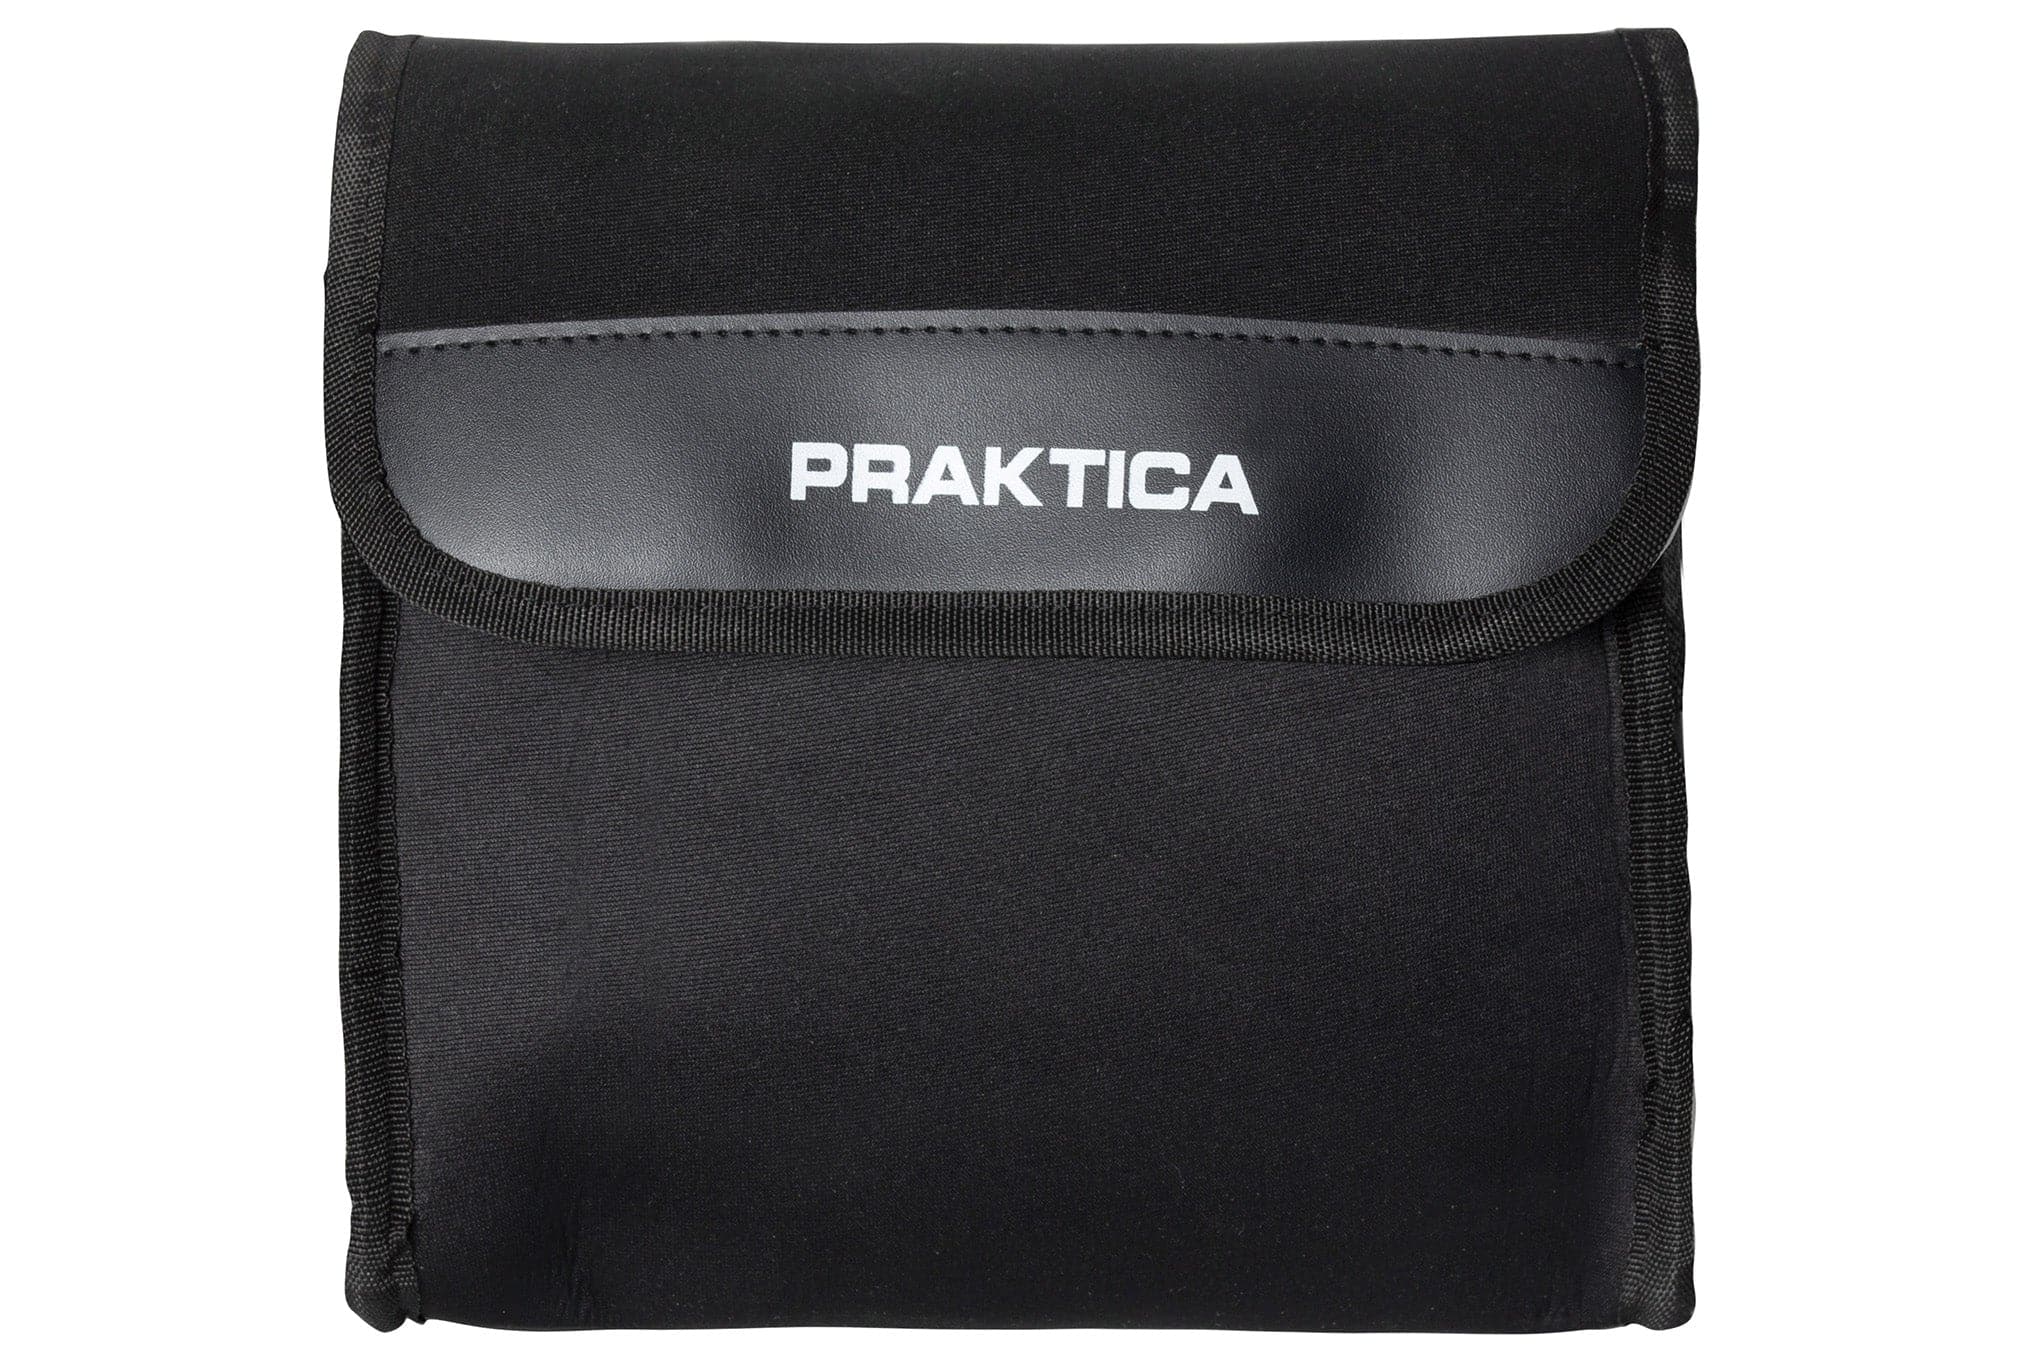 PRAKTICA Neoprene Bag for Porro Prism Field Binoculars 7x50 10x50 12x50